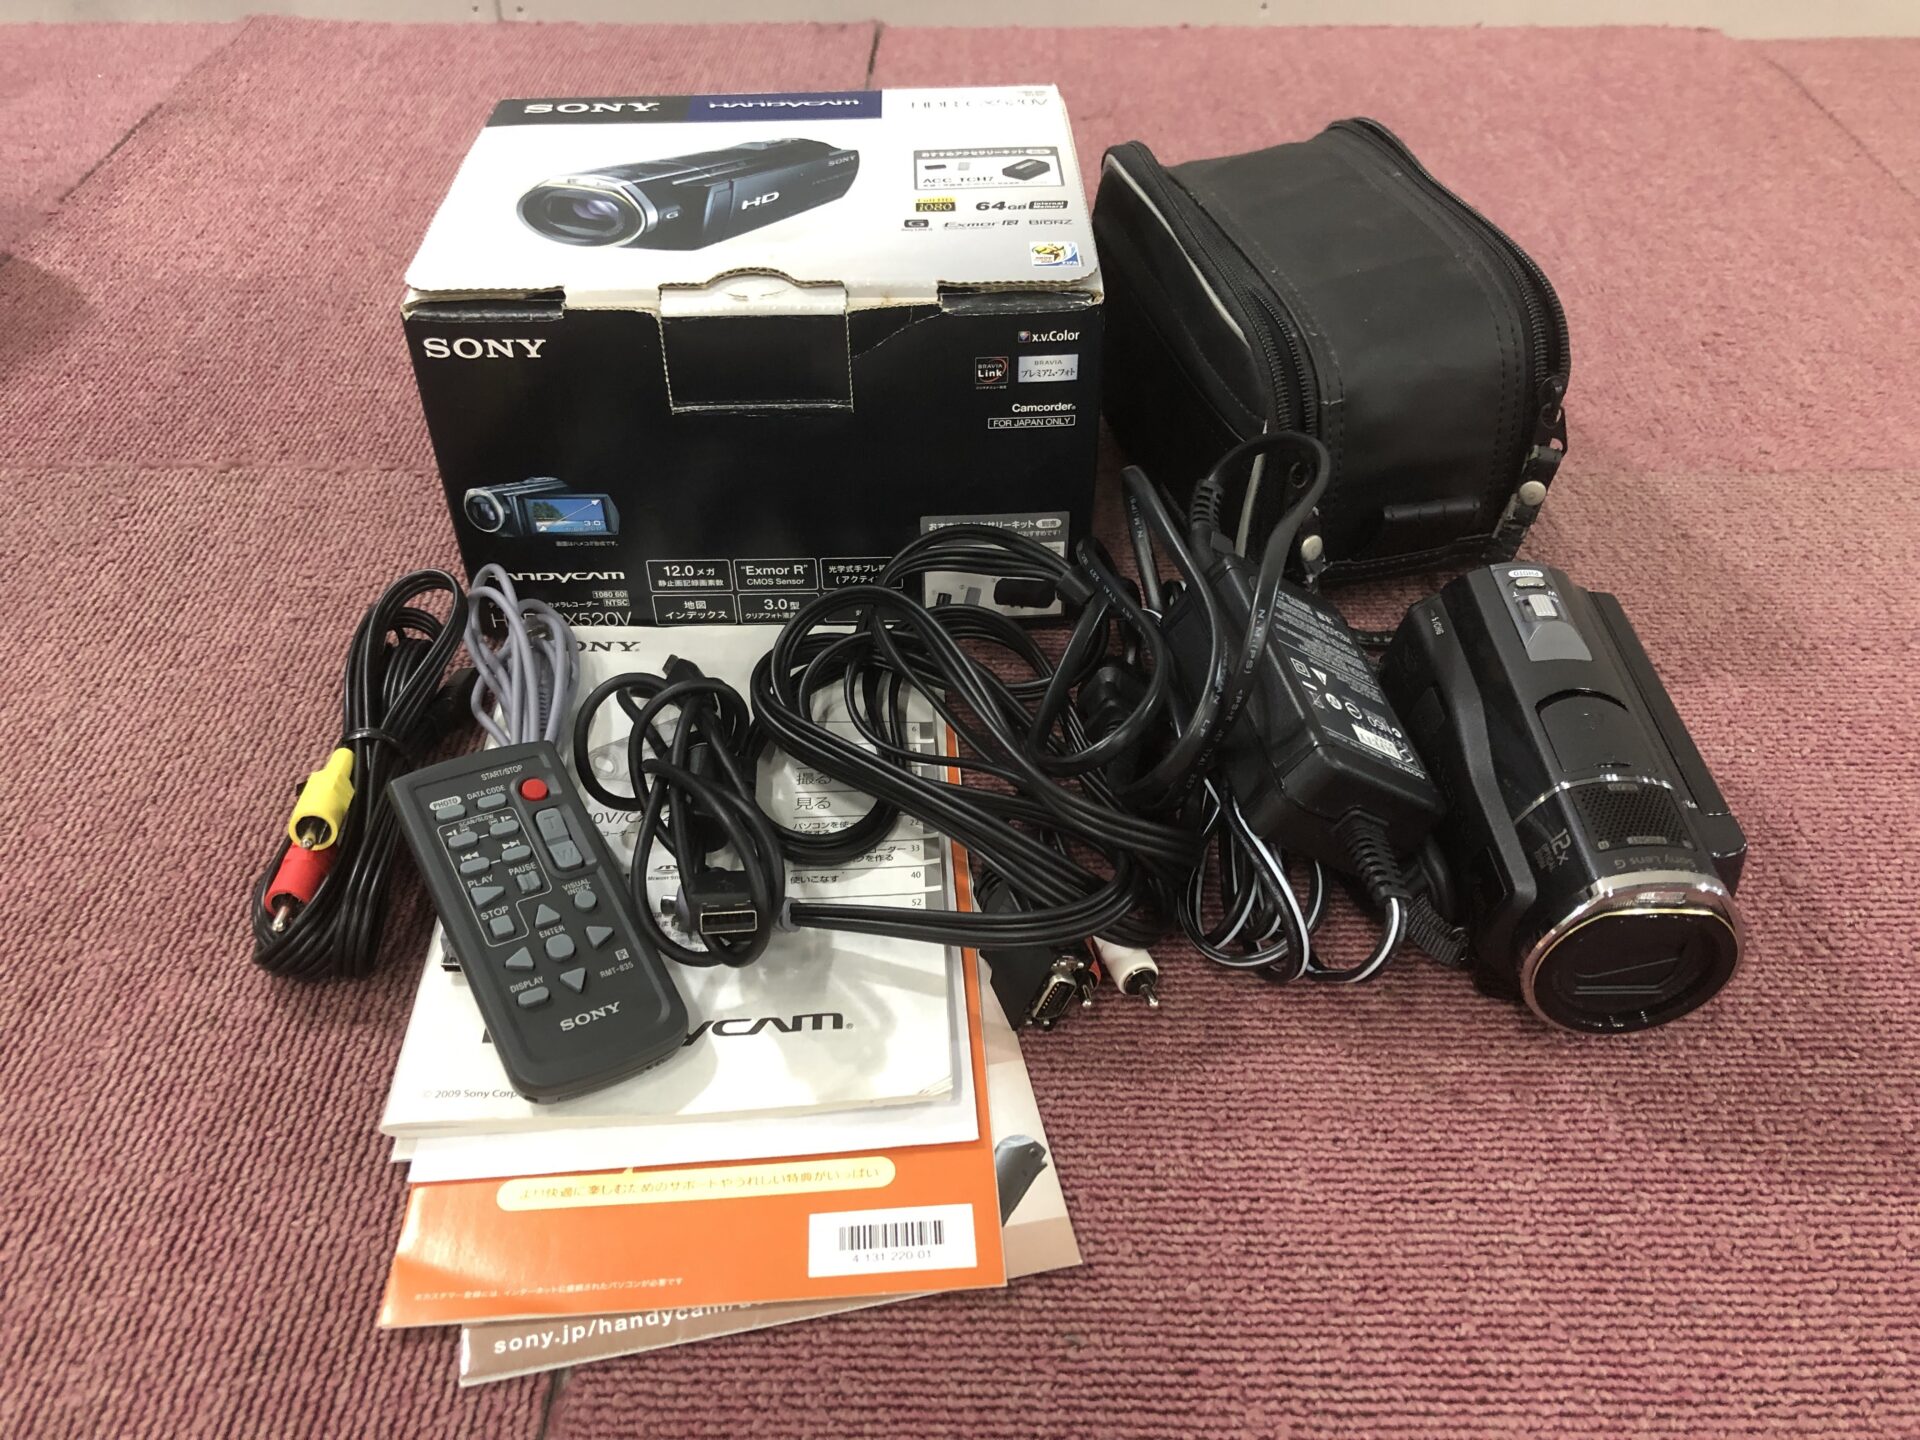 「SONY ビデオカメラ HDR-CX520V」家電の買取もしていただき大変満足です。